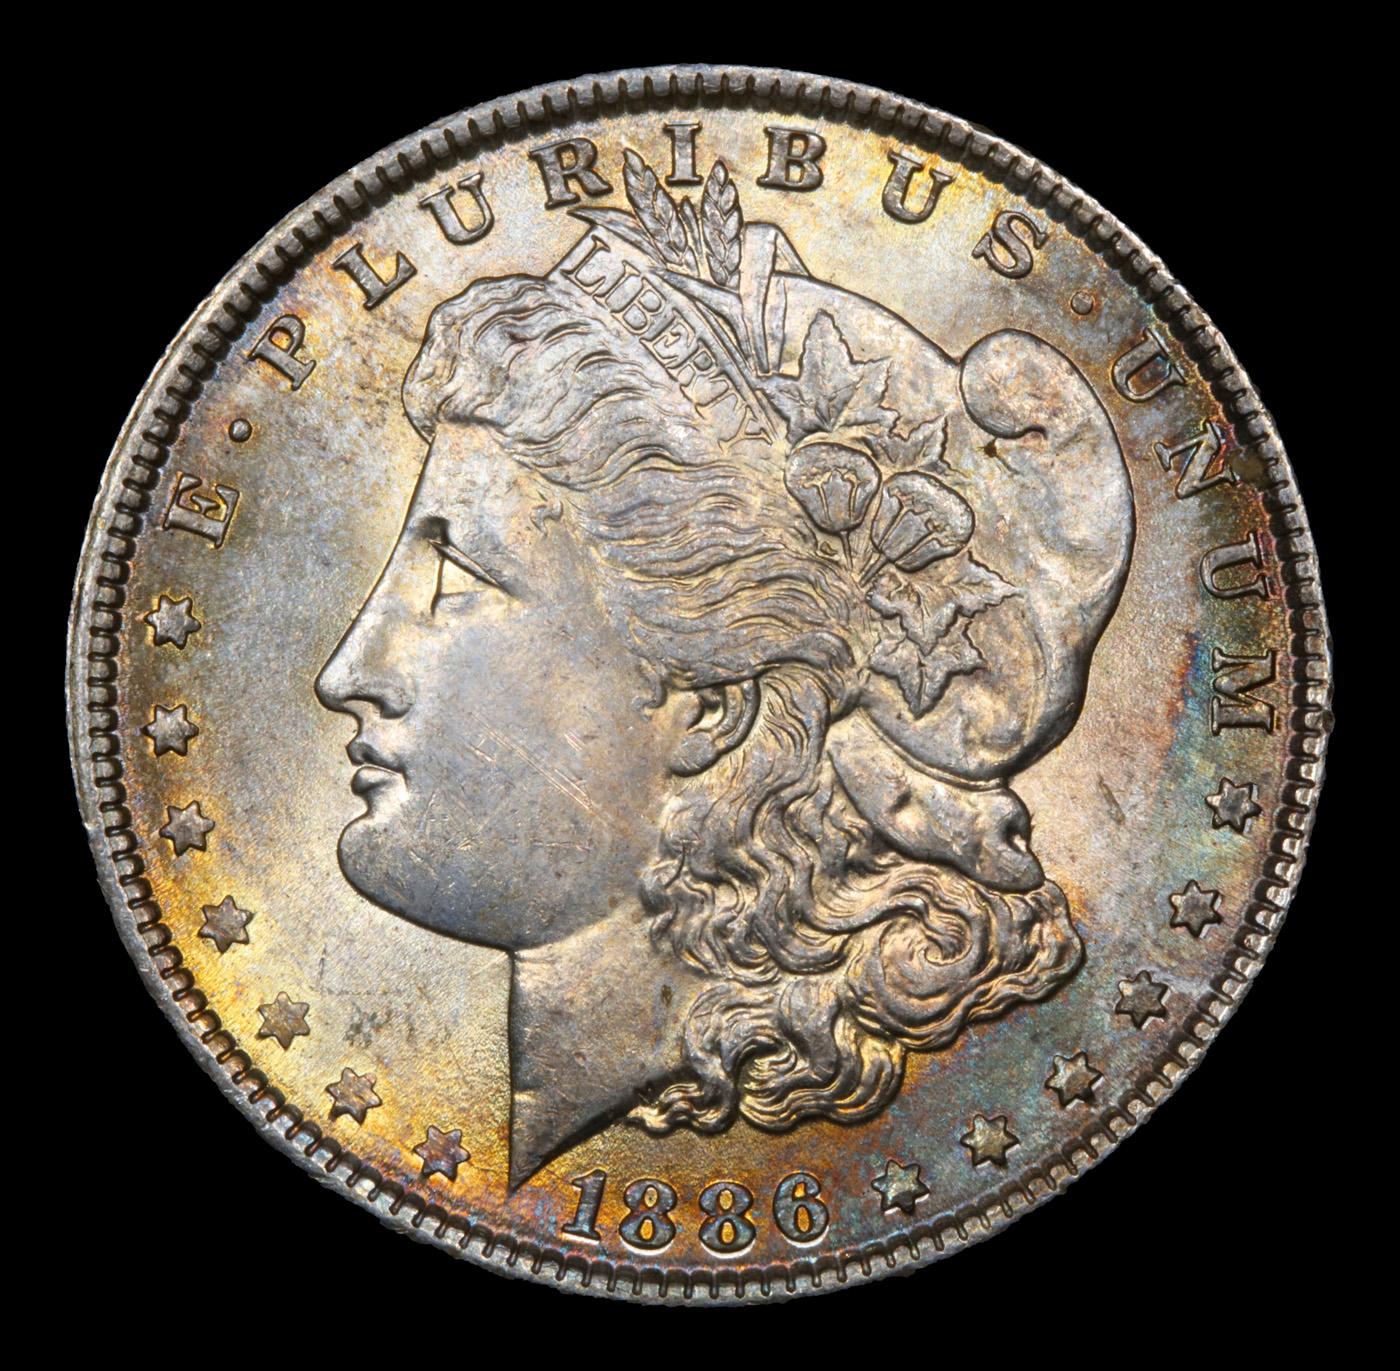 1886-p Rainbow Toned Morgan Dollar $1 Grades Select+ Unc